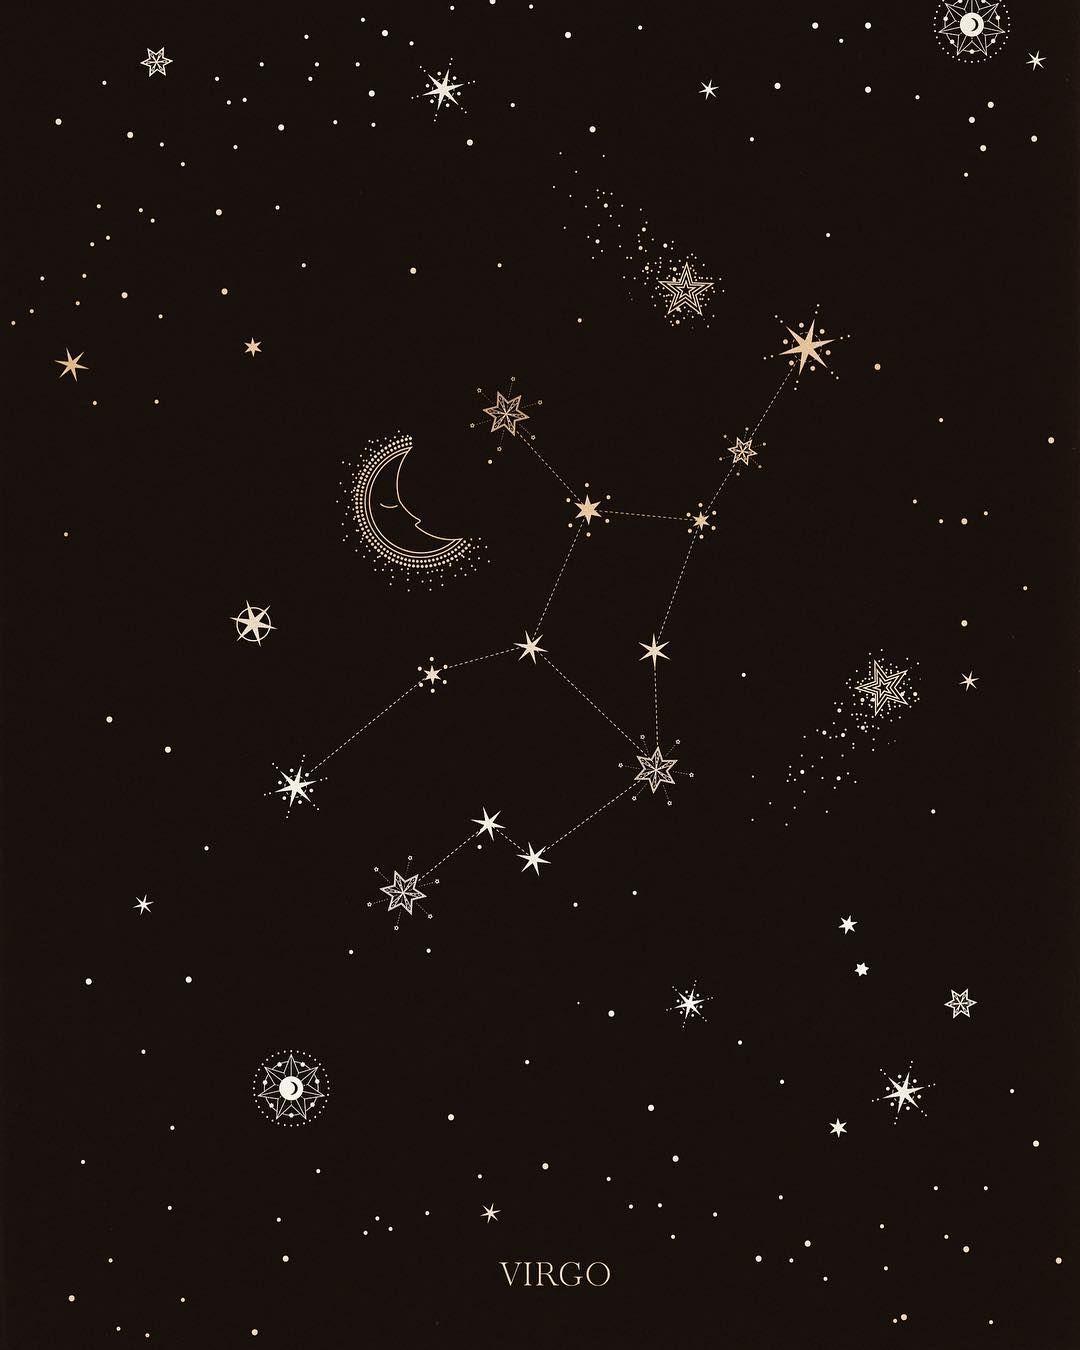 Virgo Constellation Wallpaper Free Virgo Constellation Background